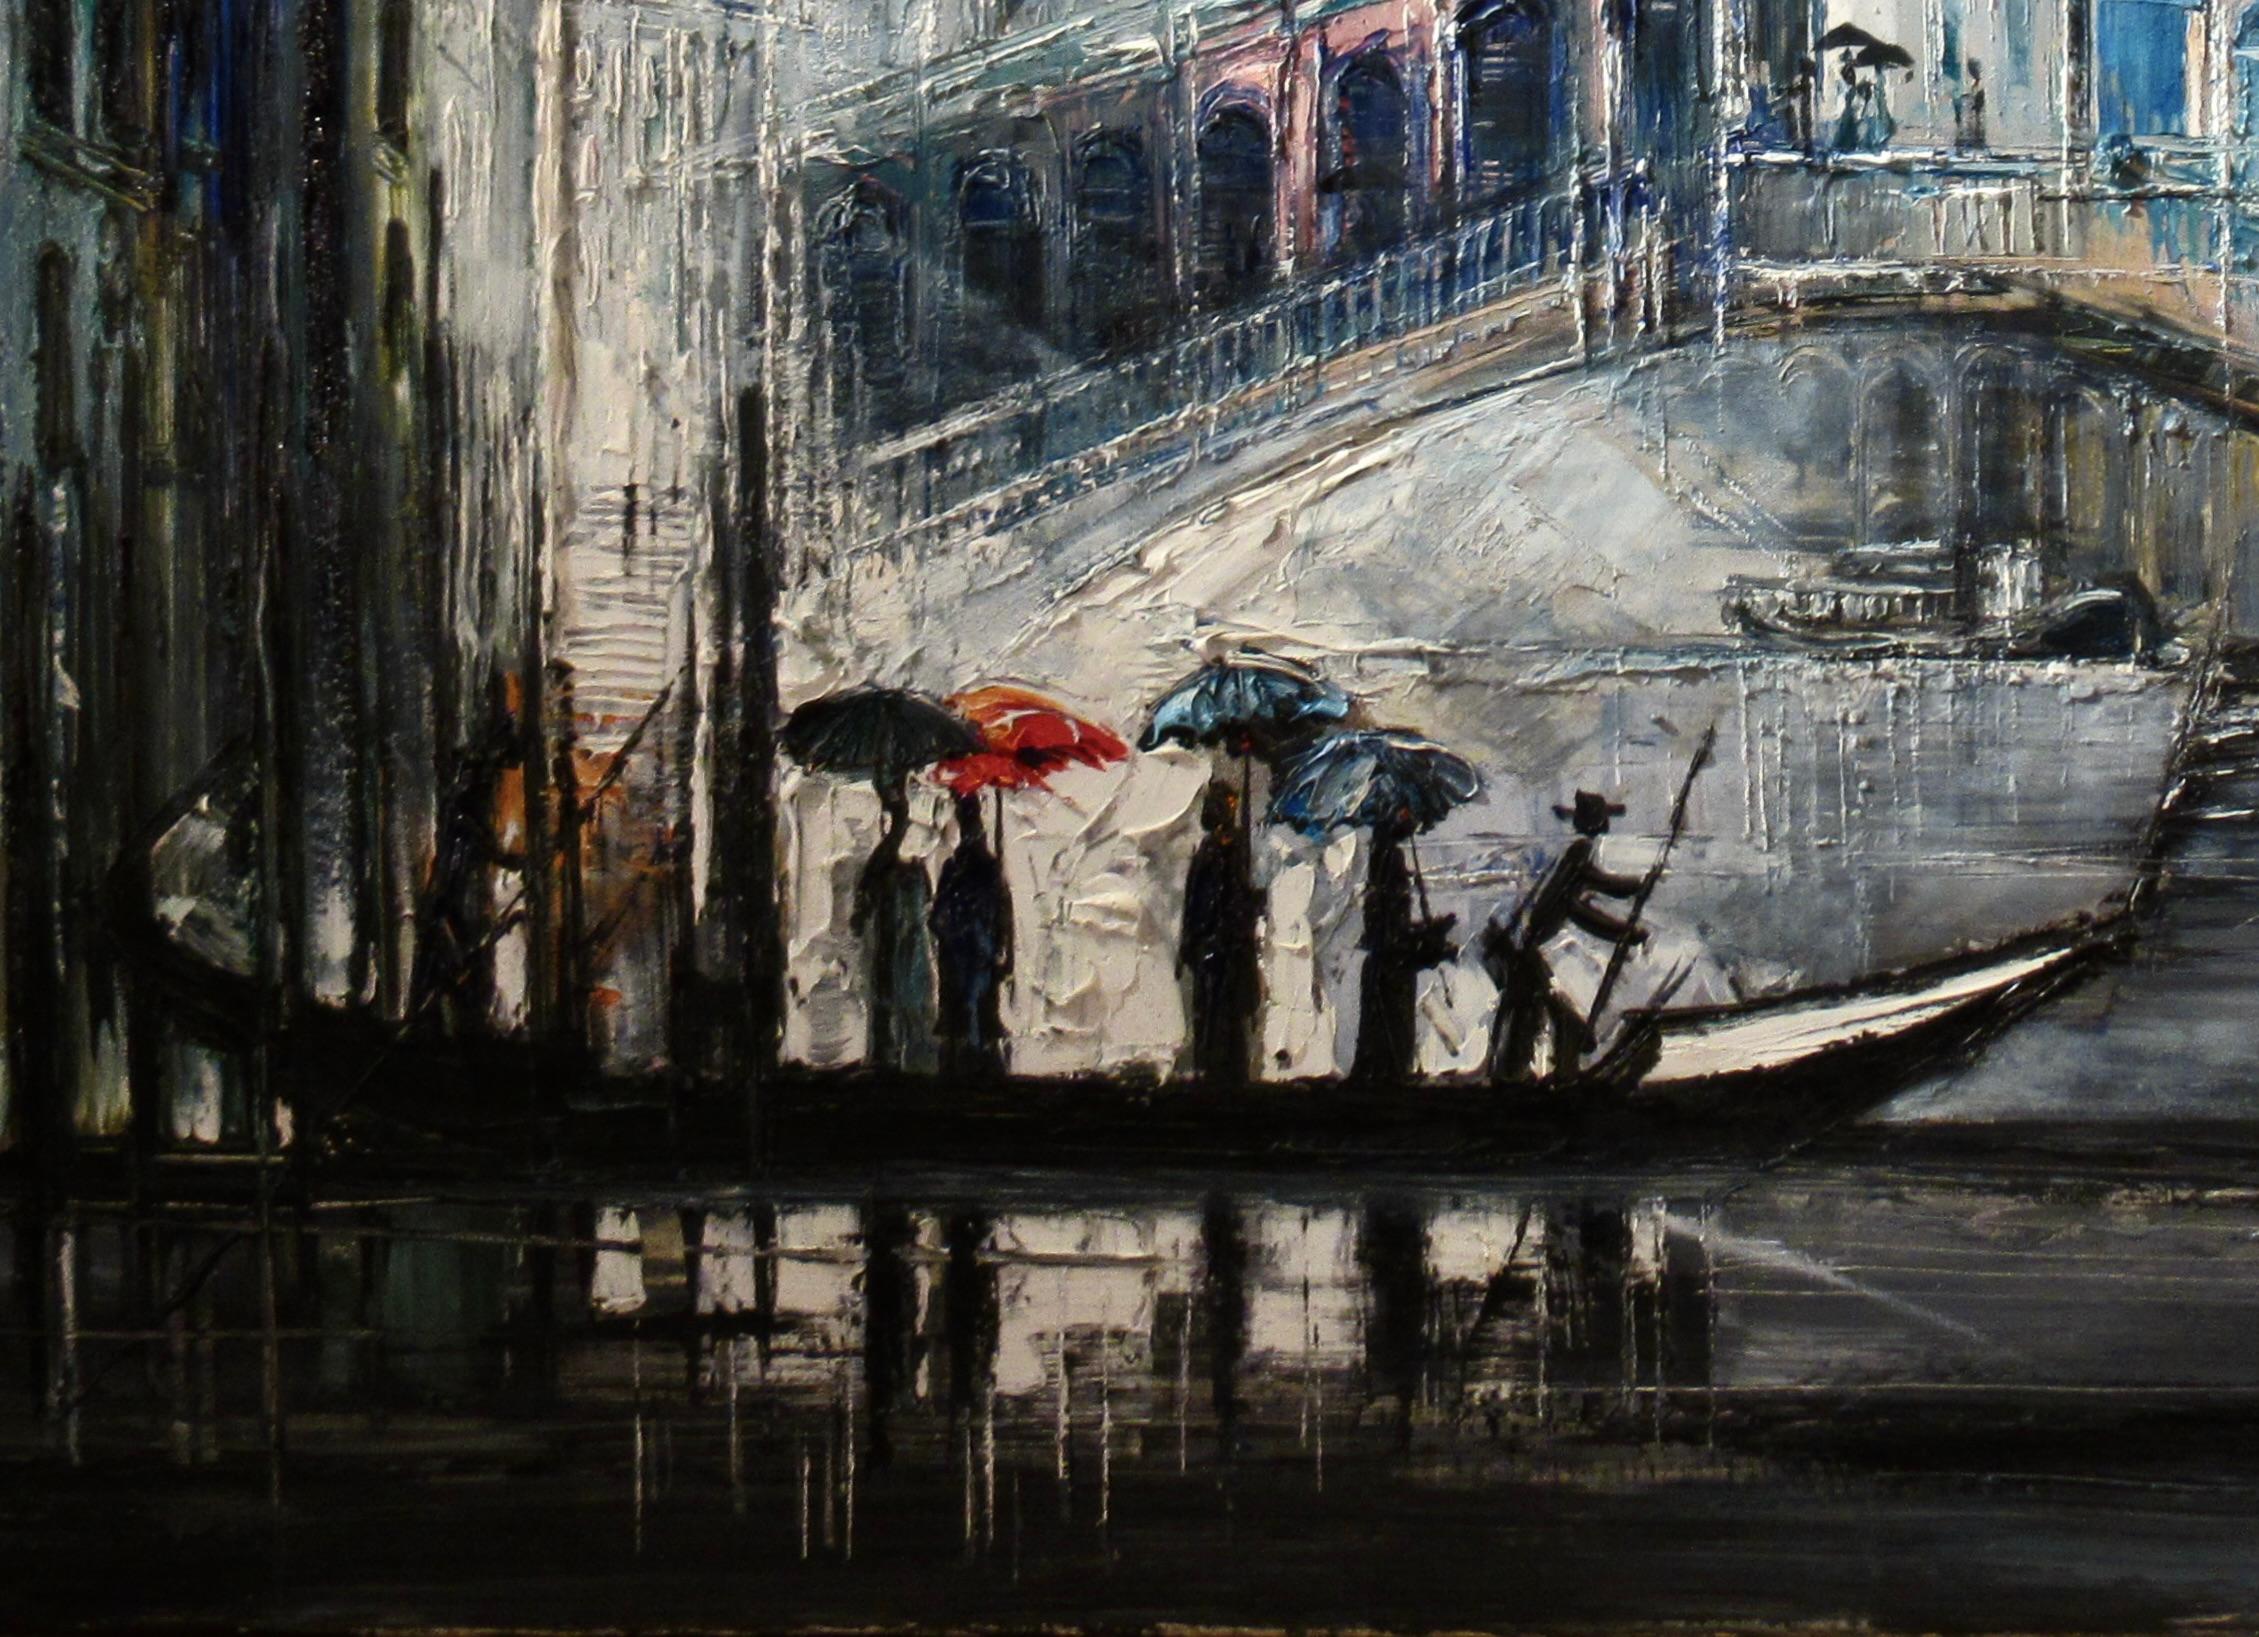 Venise - Impressionnisme Painting par Regis Bouvier de Cachard